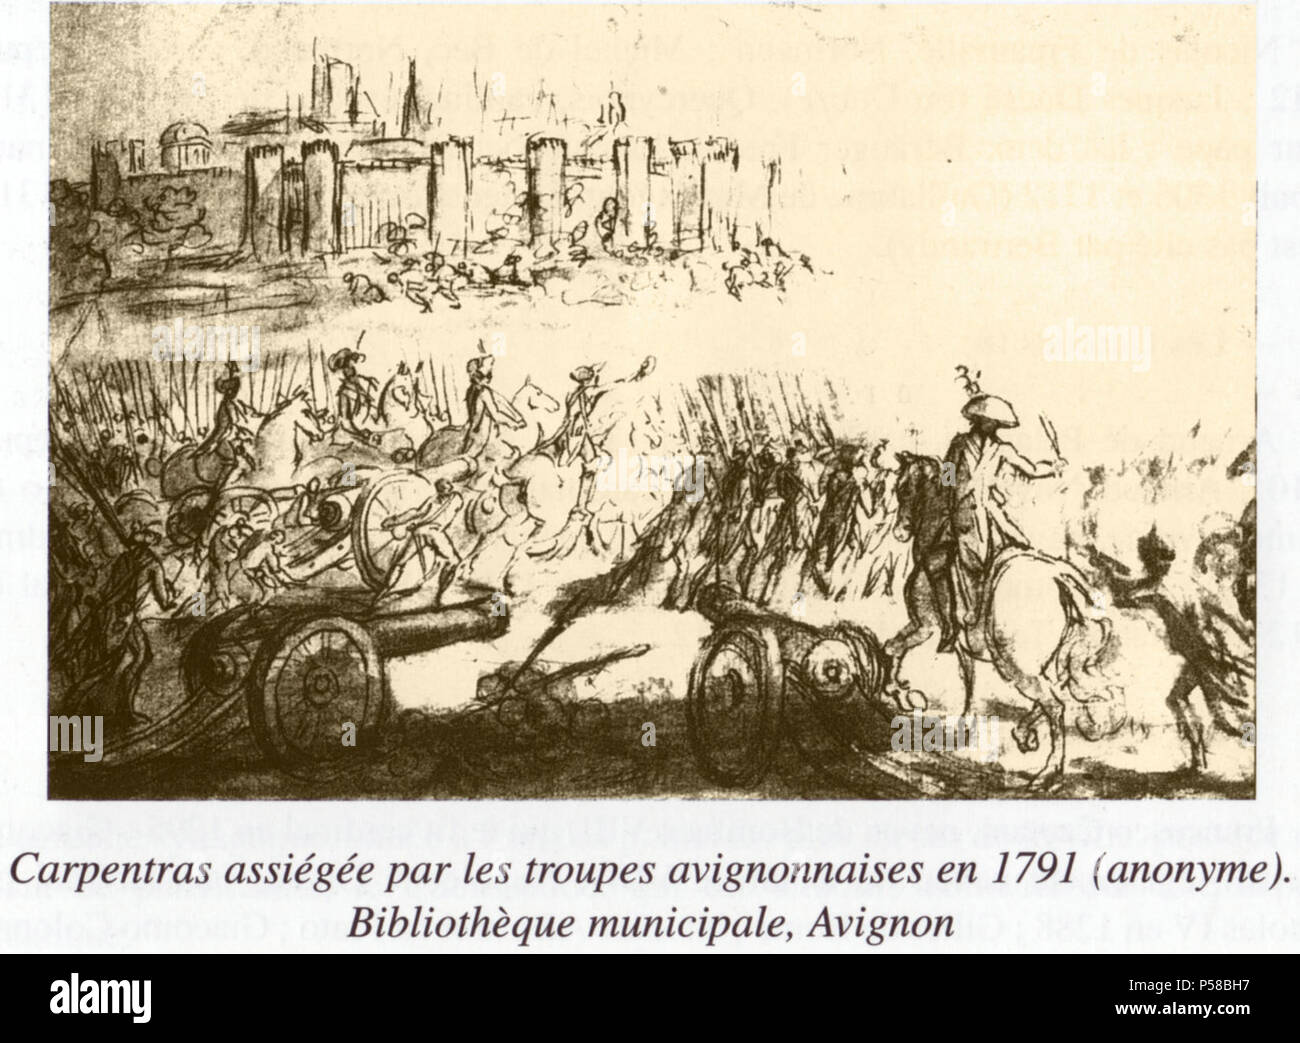 18 Siège de Carpentras (1791) Anonyme Bibliothèque municipale Ceccano Avignon. Stock Photo